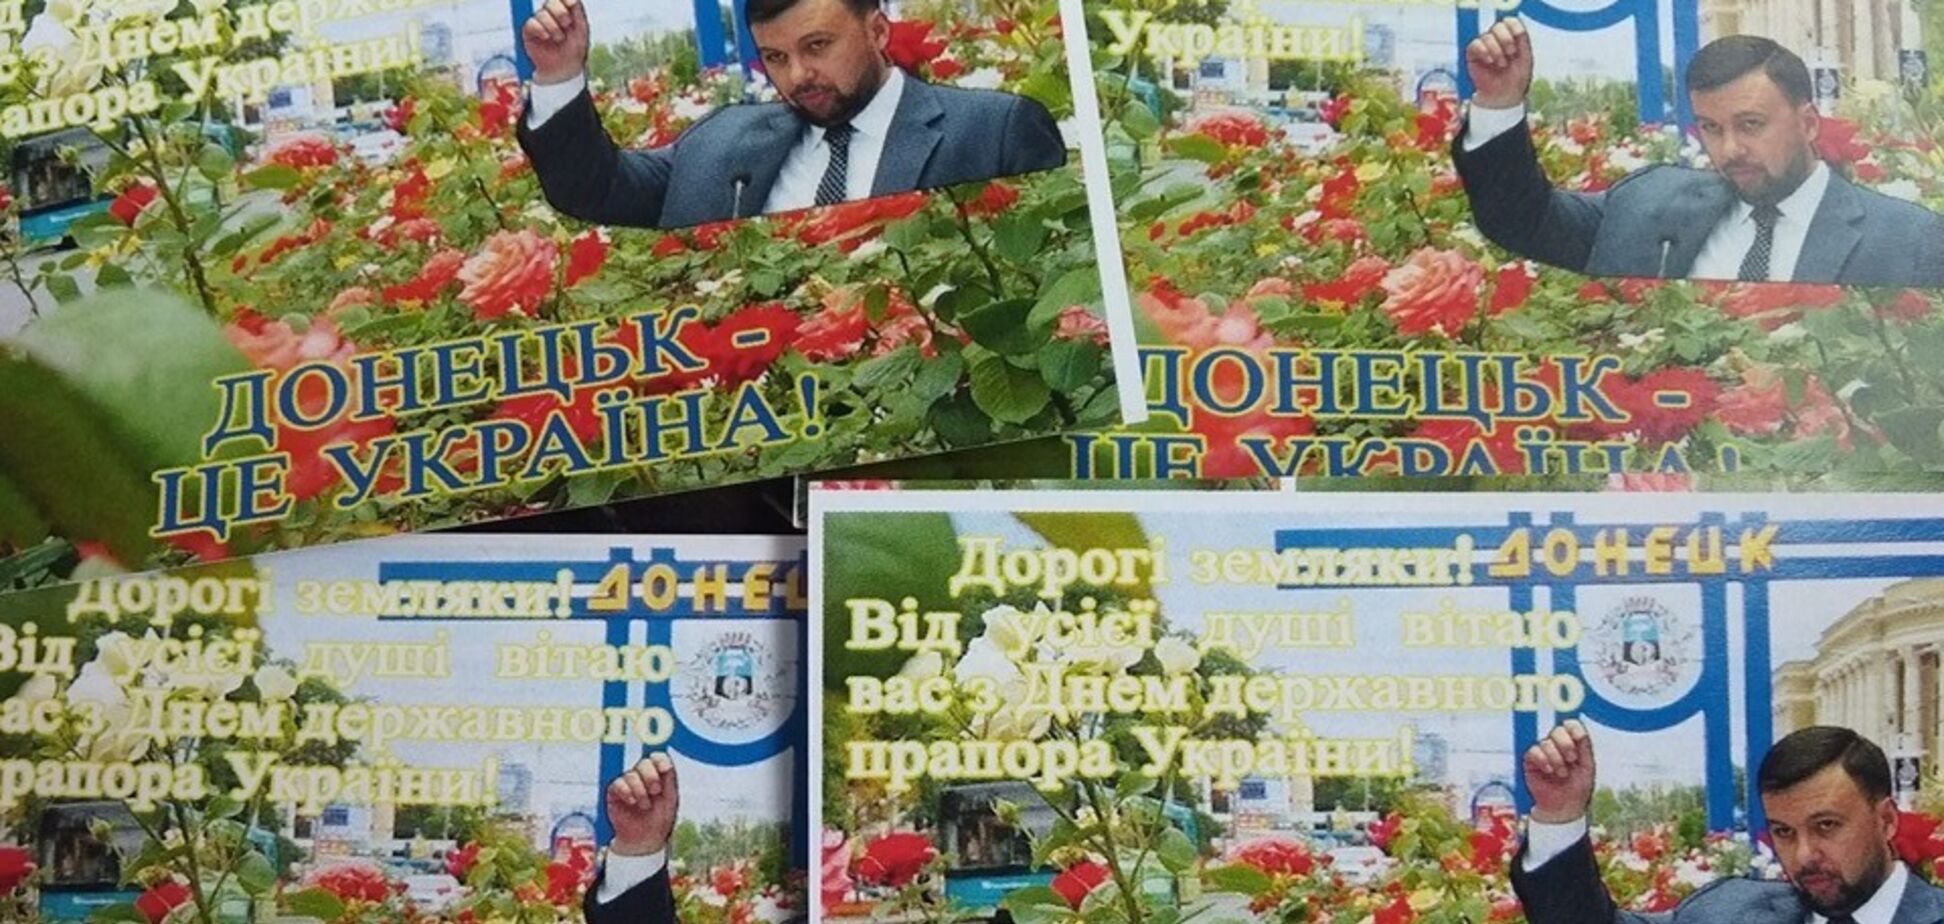 Пушилин на украинском поздравил 'ДНР' с днем флага Украины